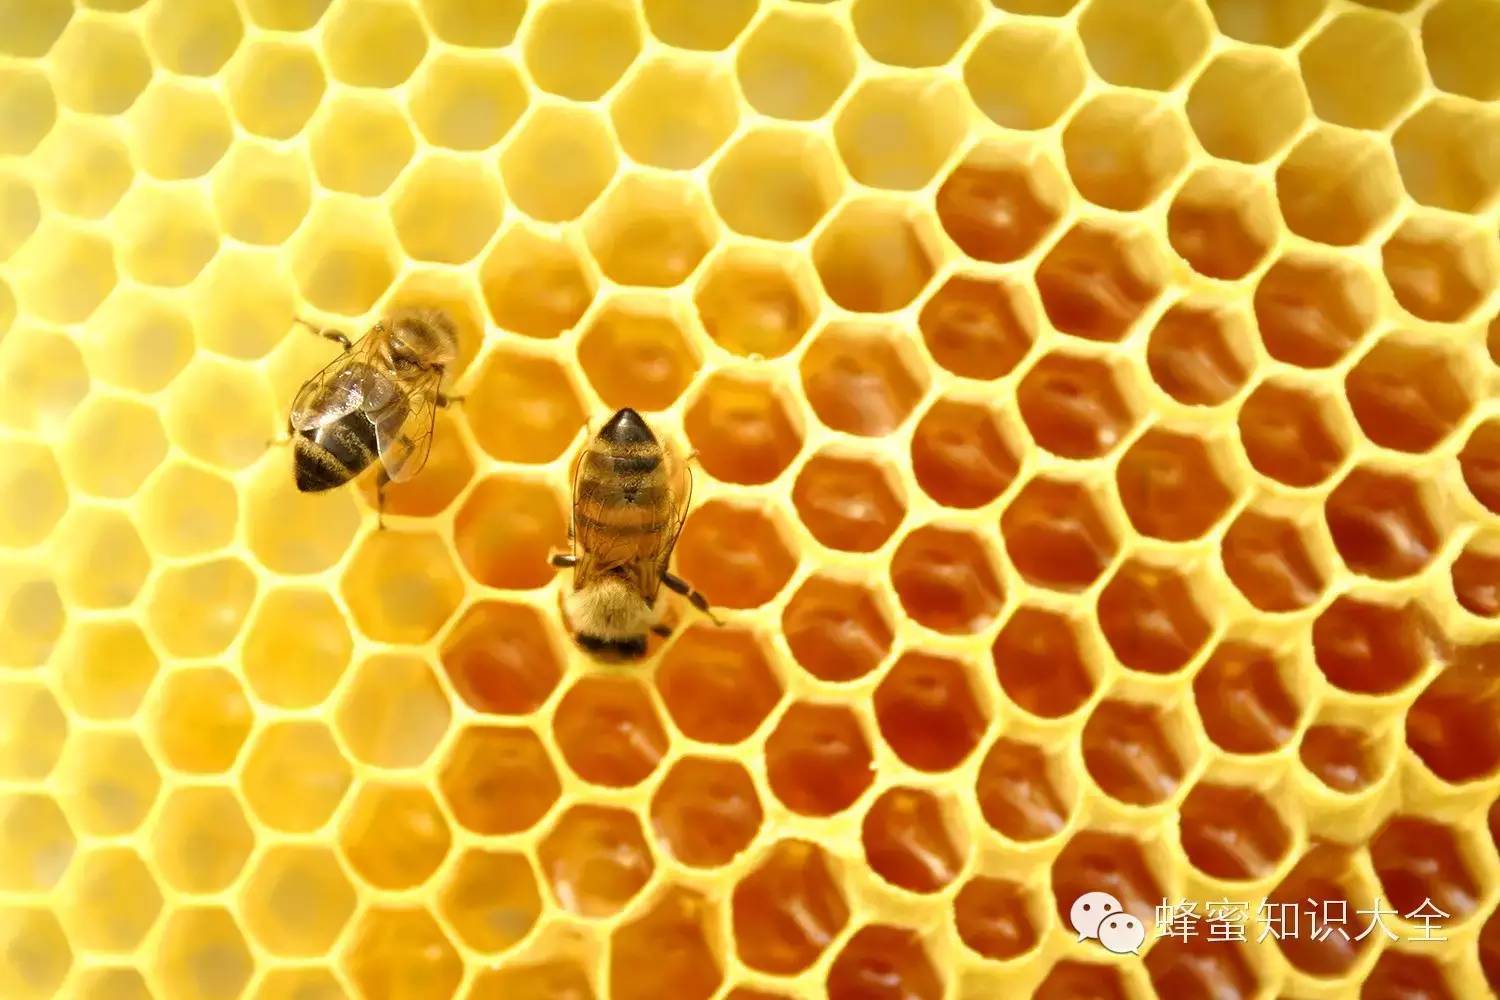 真蜂蜜一斤多少钱 枣花蜂蜜的作用 晚上喝蜂蜜水好吗 怎样做蜂蜜柠檬水 血糖高能吃蜂蜜吗